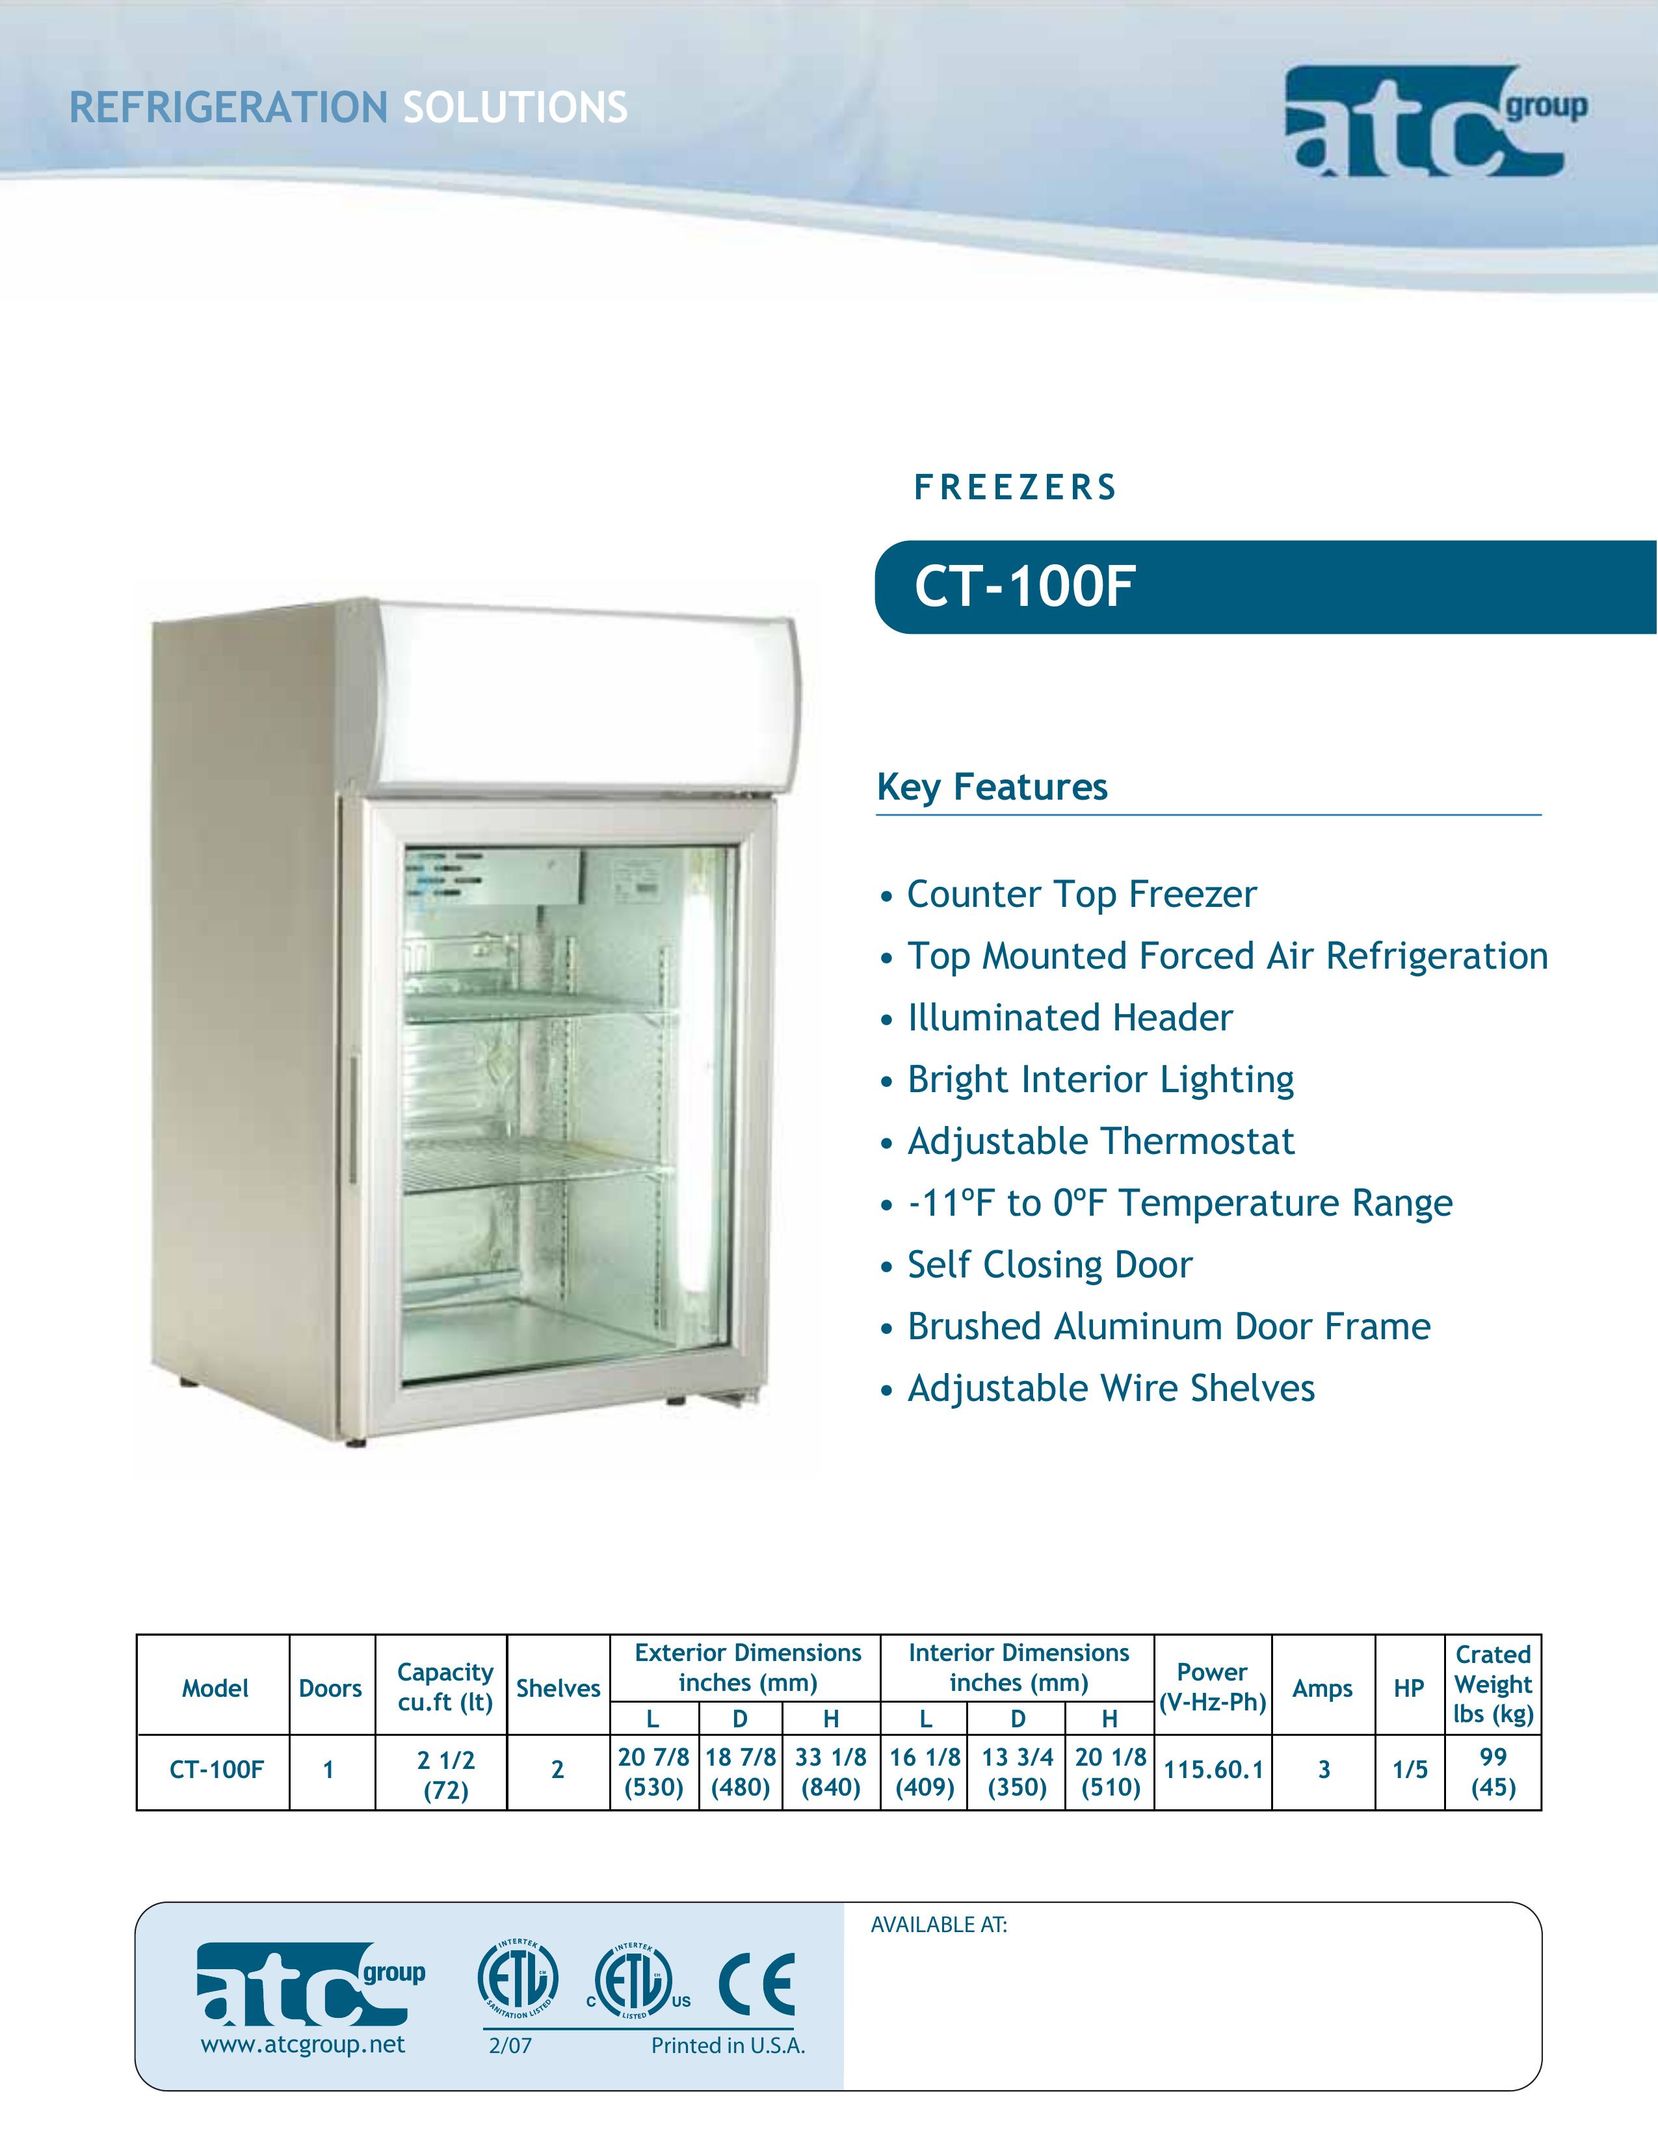 ATC Group CT-100F Freezer User Manual